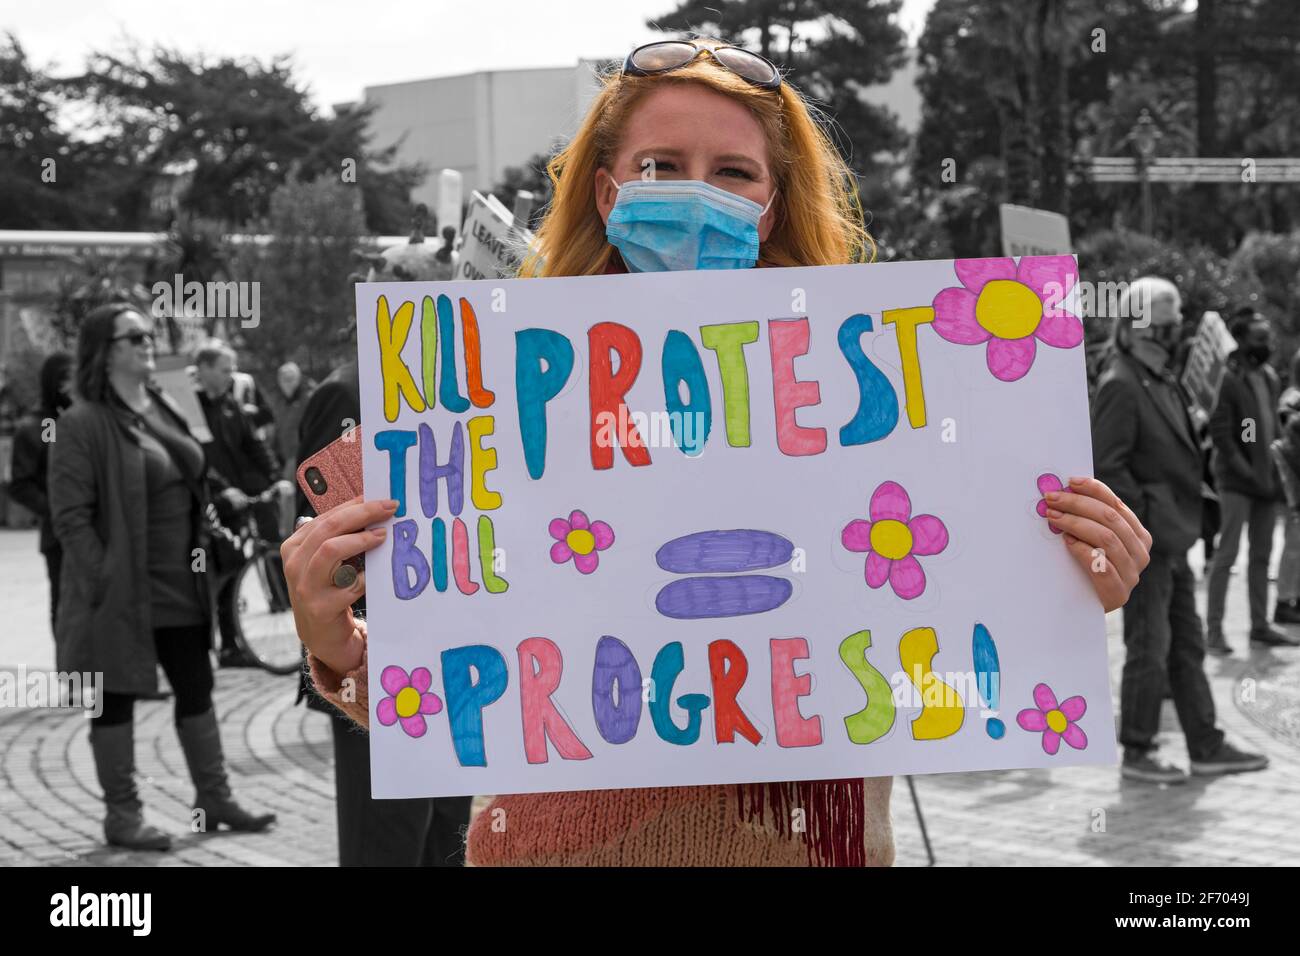 Una joven que sostiene a Kill la protesta de Bill = un cartel de progreso en Kill la protesta de Bill en Bournemouth, Dorset Reino Unido en abril Foto de stock